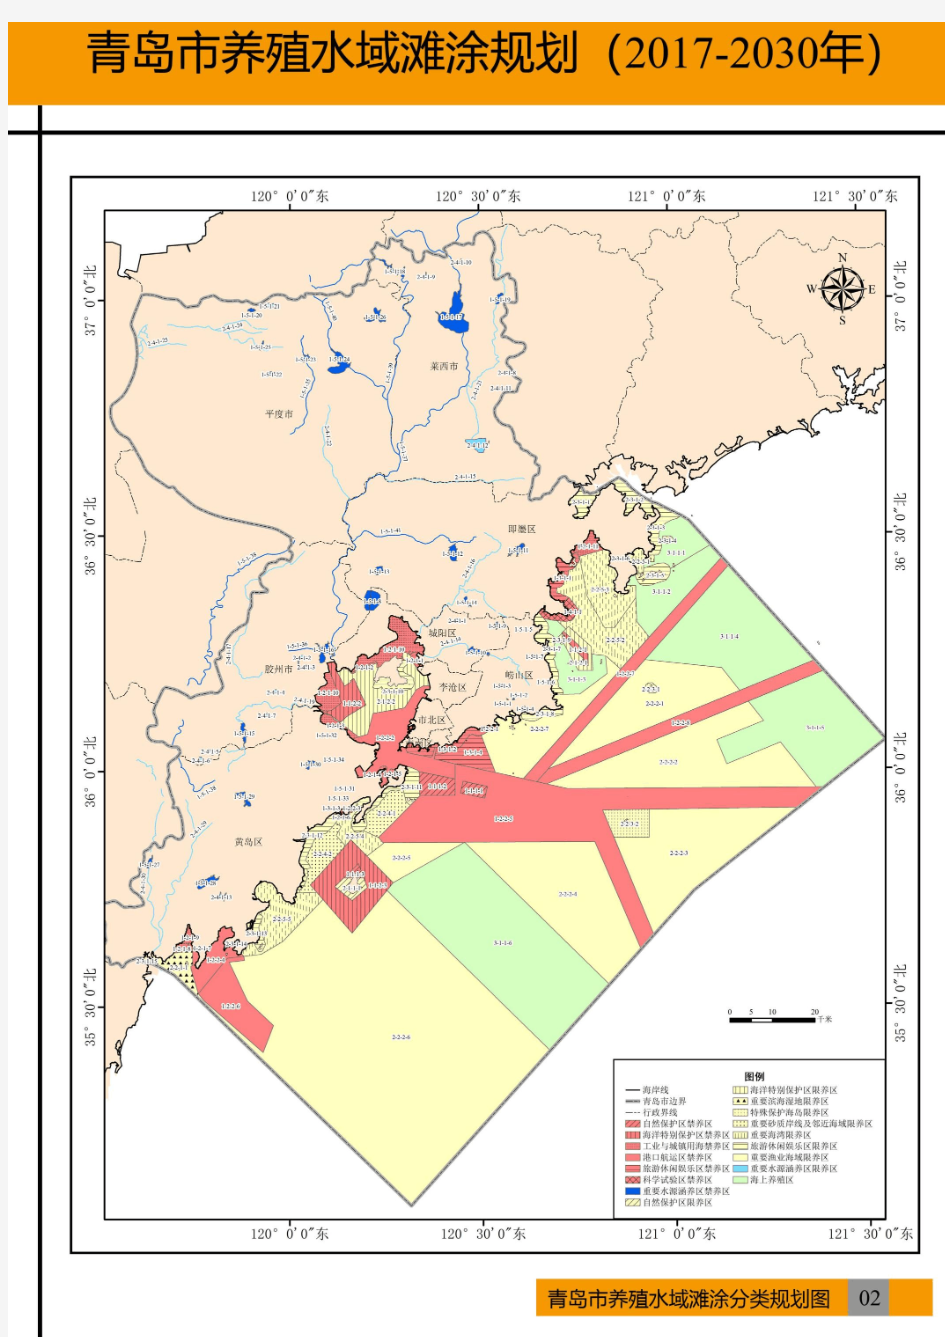 青岛市养殖水域滩涂规划图(征求意见稿)